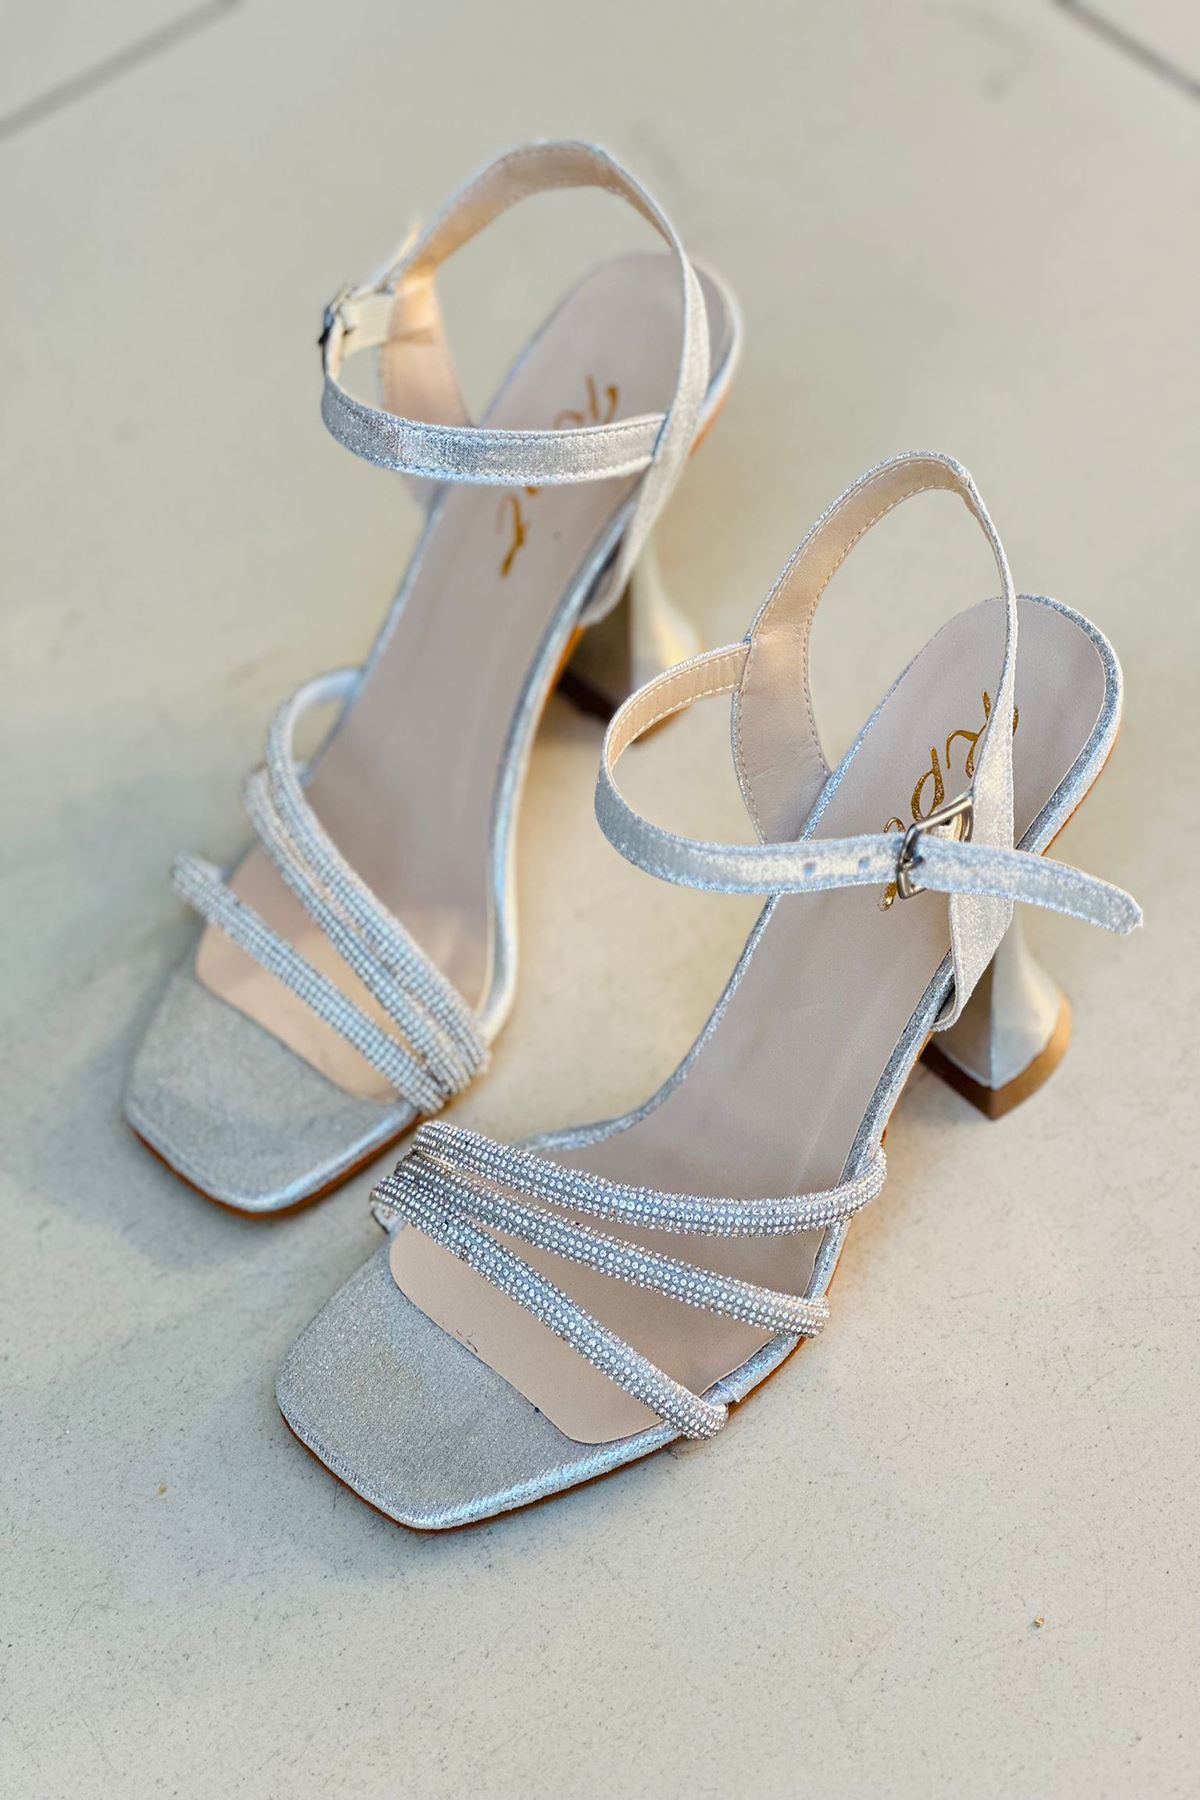 Mida Shoes Y823 Gümüş Deri Boncuklu Bantlı Kadın Topuklu Ayakkabı